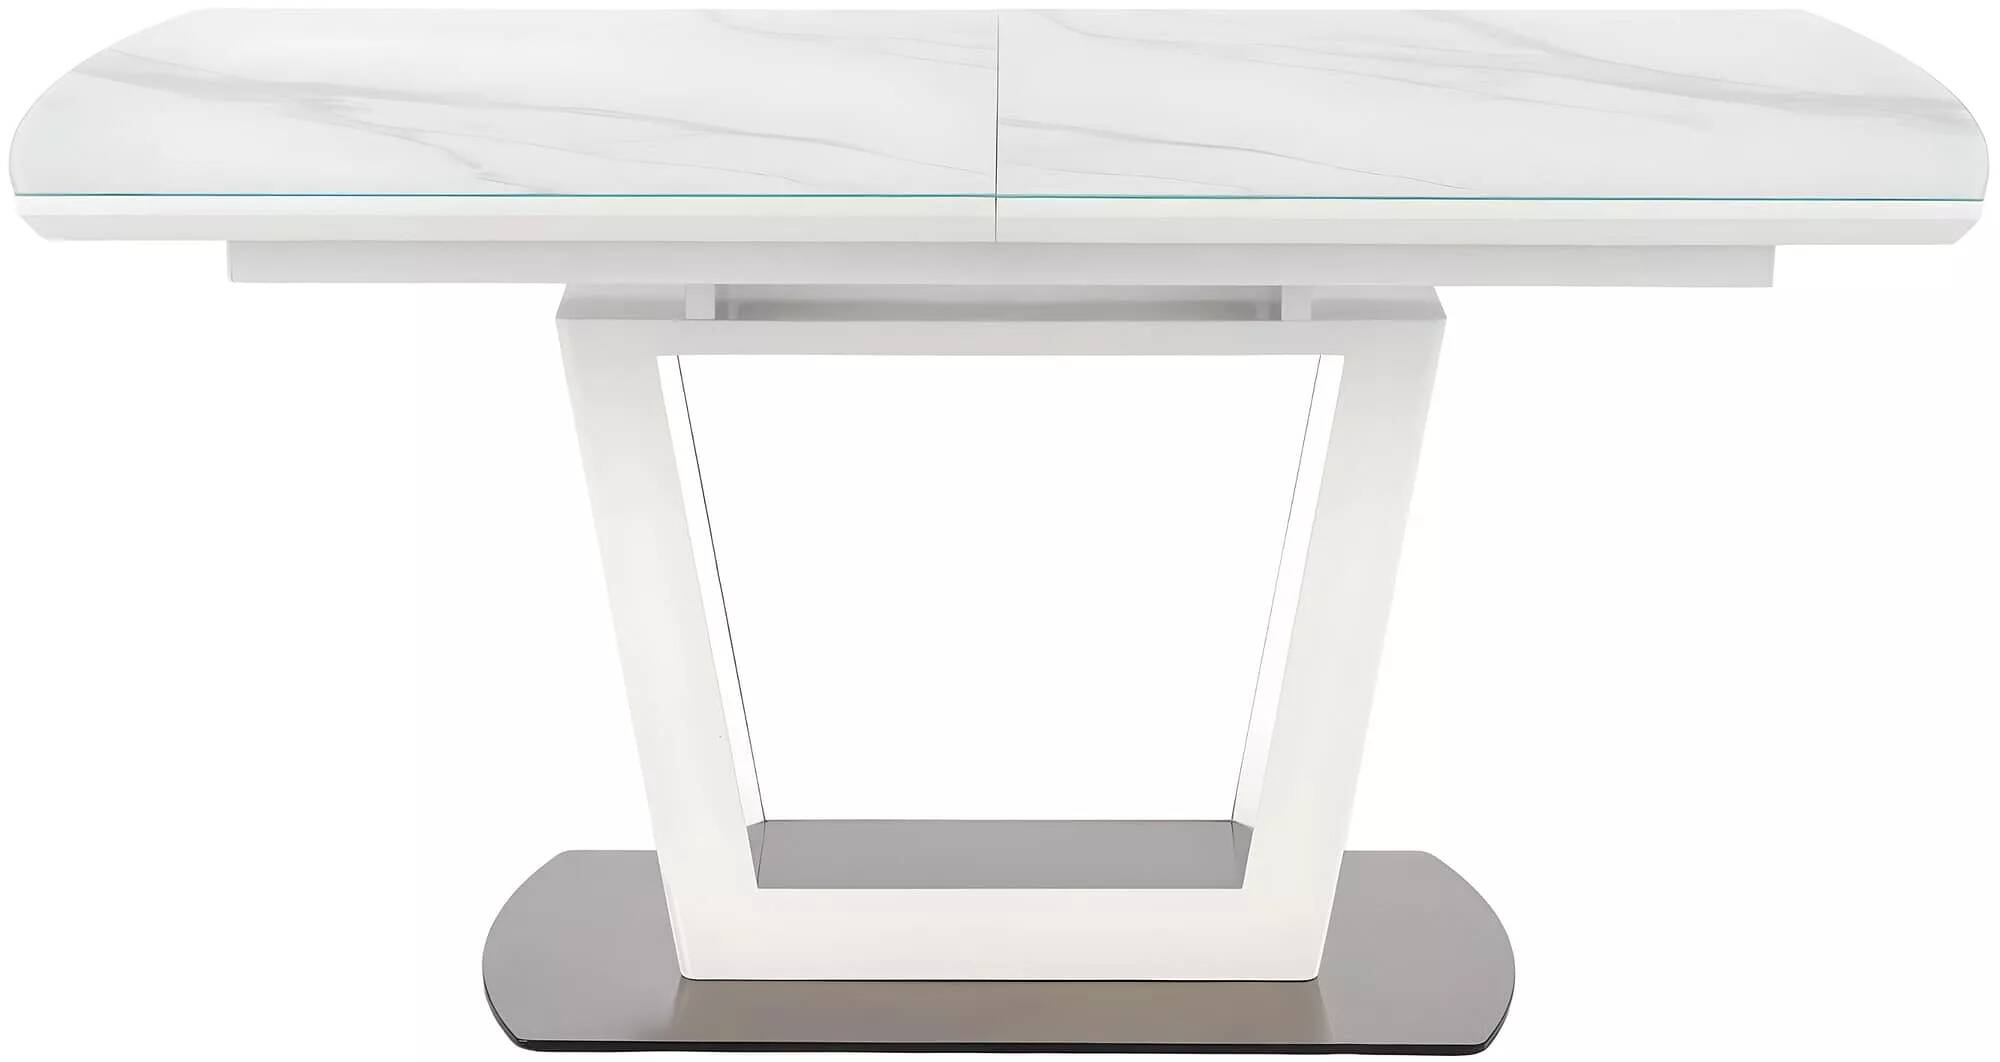 Table à manger extensible en verre aspect marbre blanc L160-200